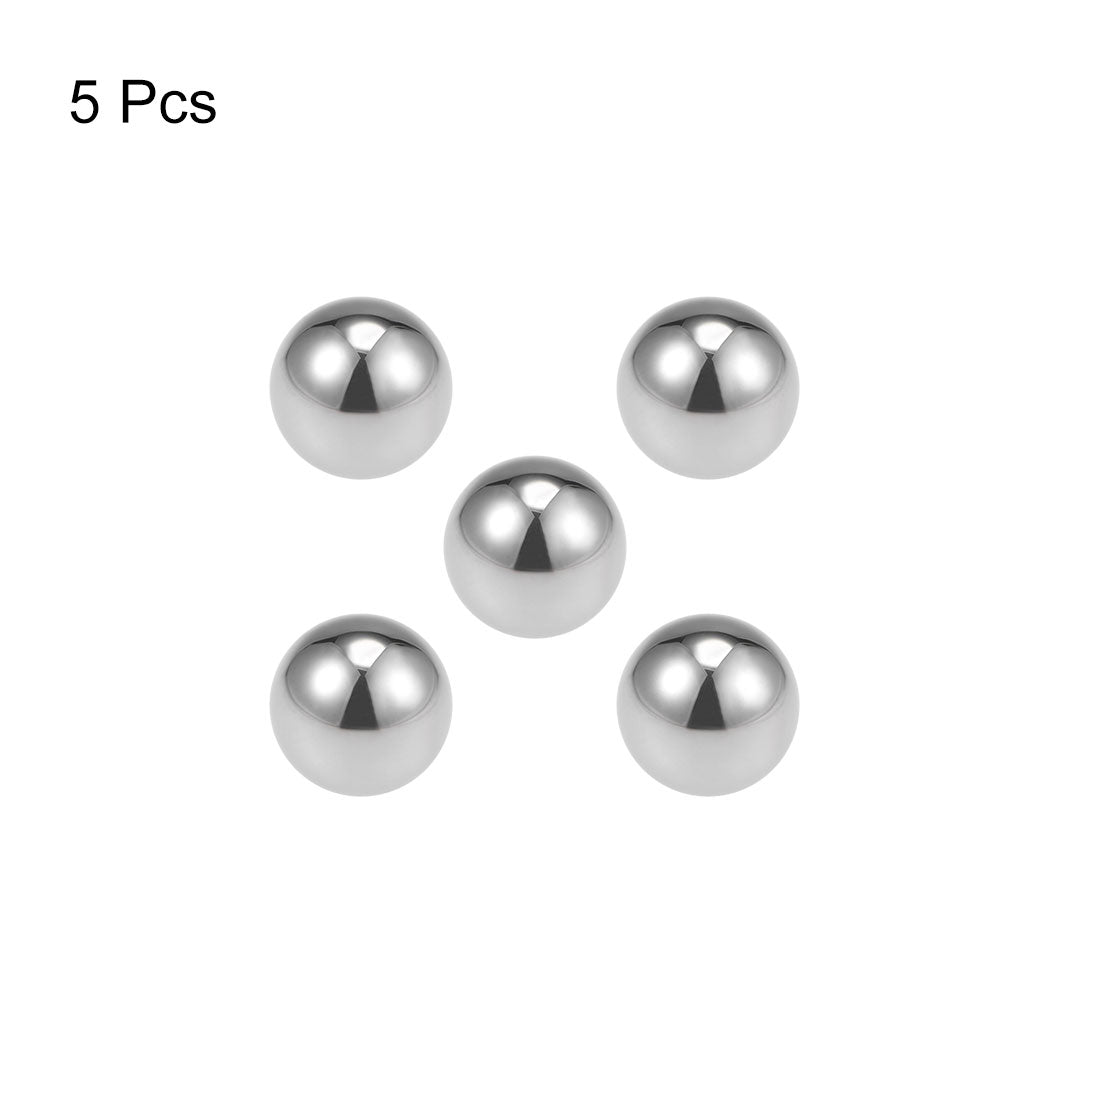 Uxcell Uxcell 3mm Bearing Balls Tungsten Carbide G25 Precision Balls 5pcs